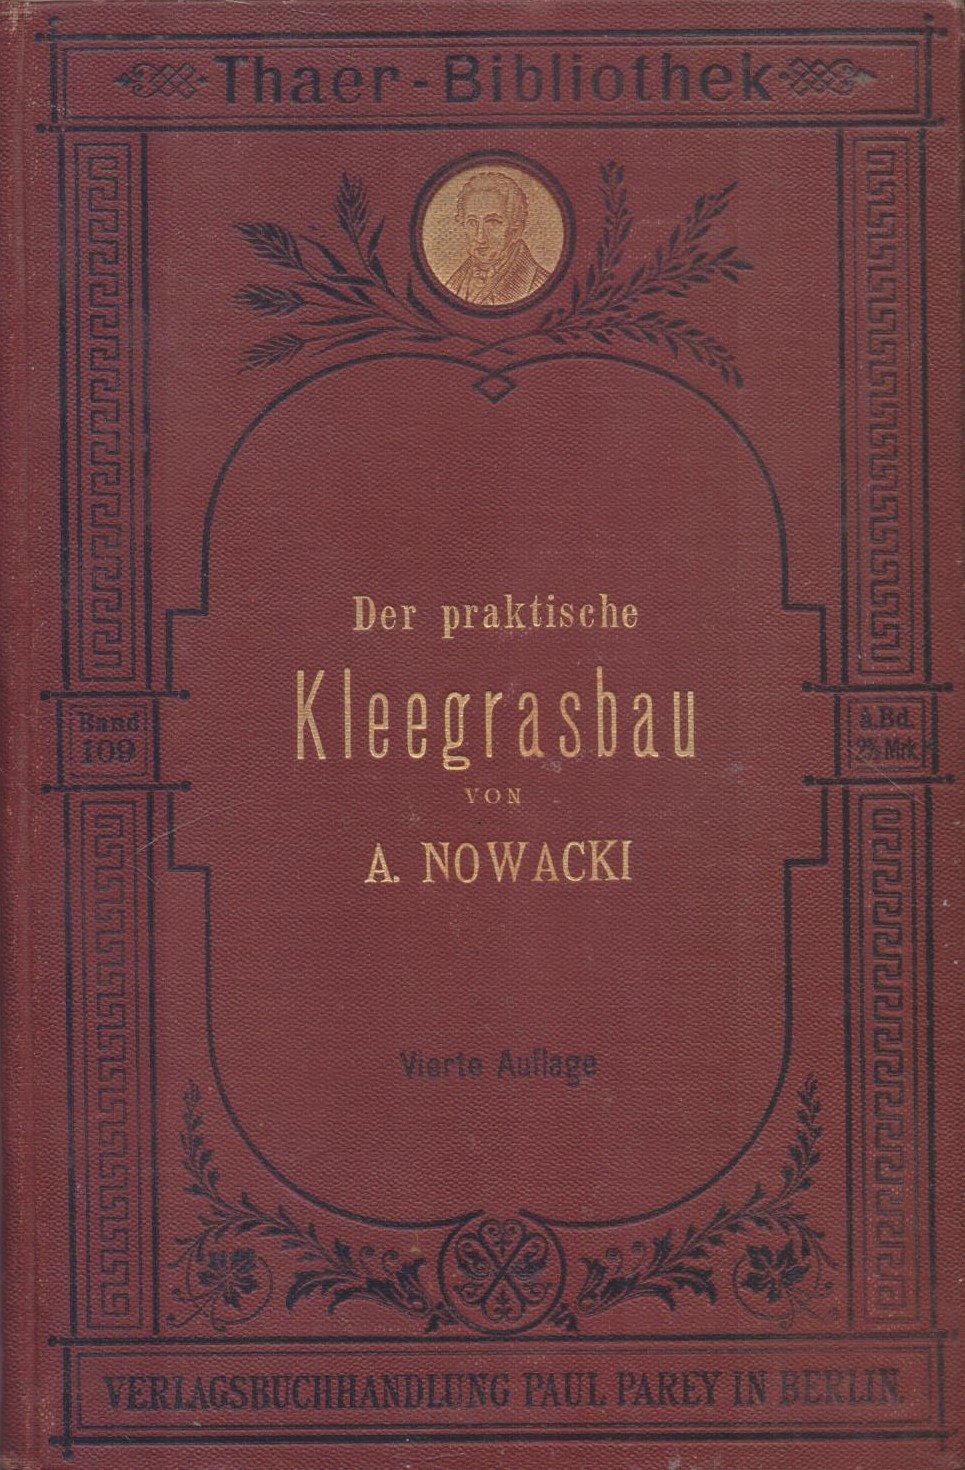 Der praktische kleegrasbau A. Nowacki